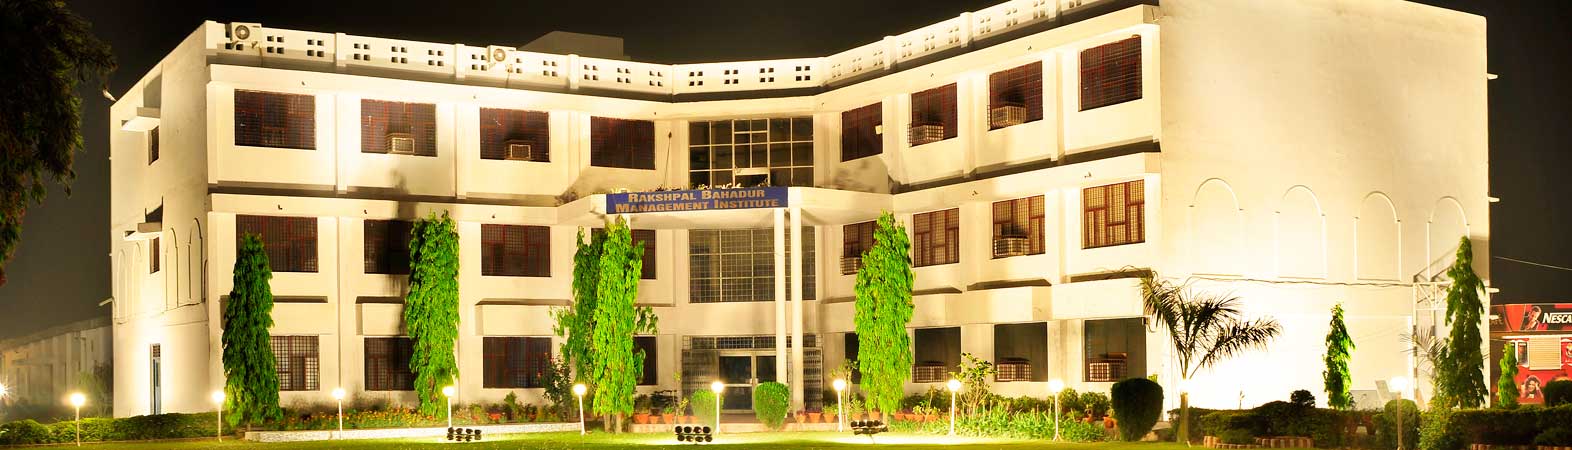 Rakshpal Bahadur Management Institute, Bareilly Image